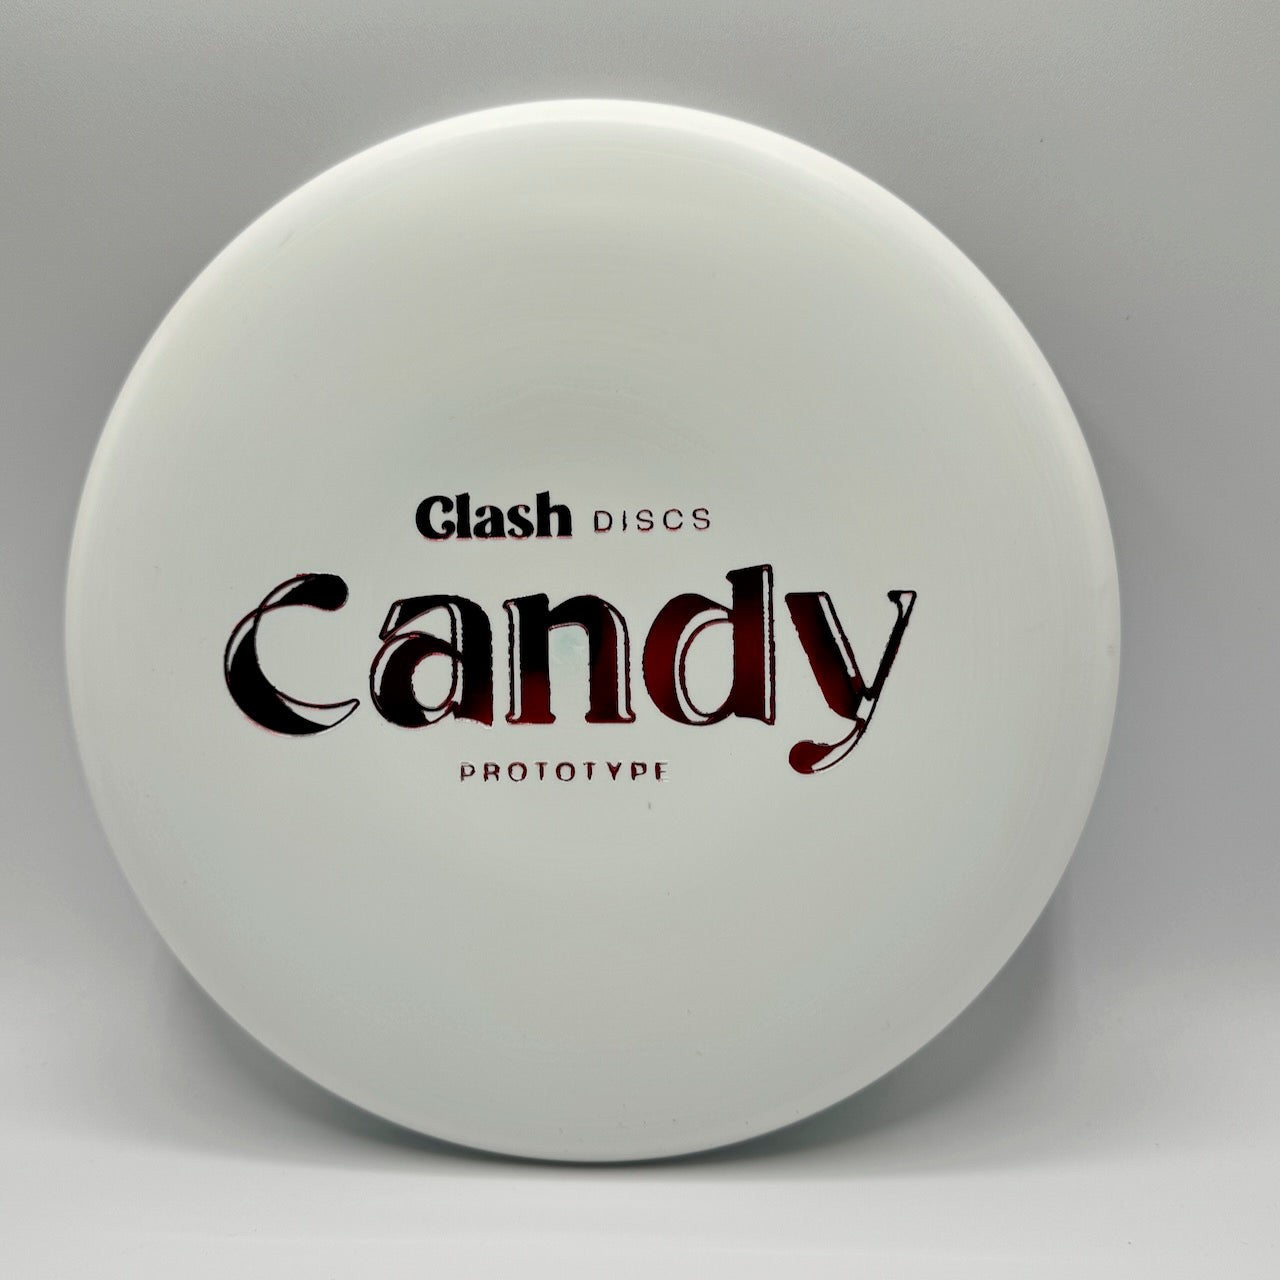 Clash Discs Prototype Candy